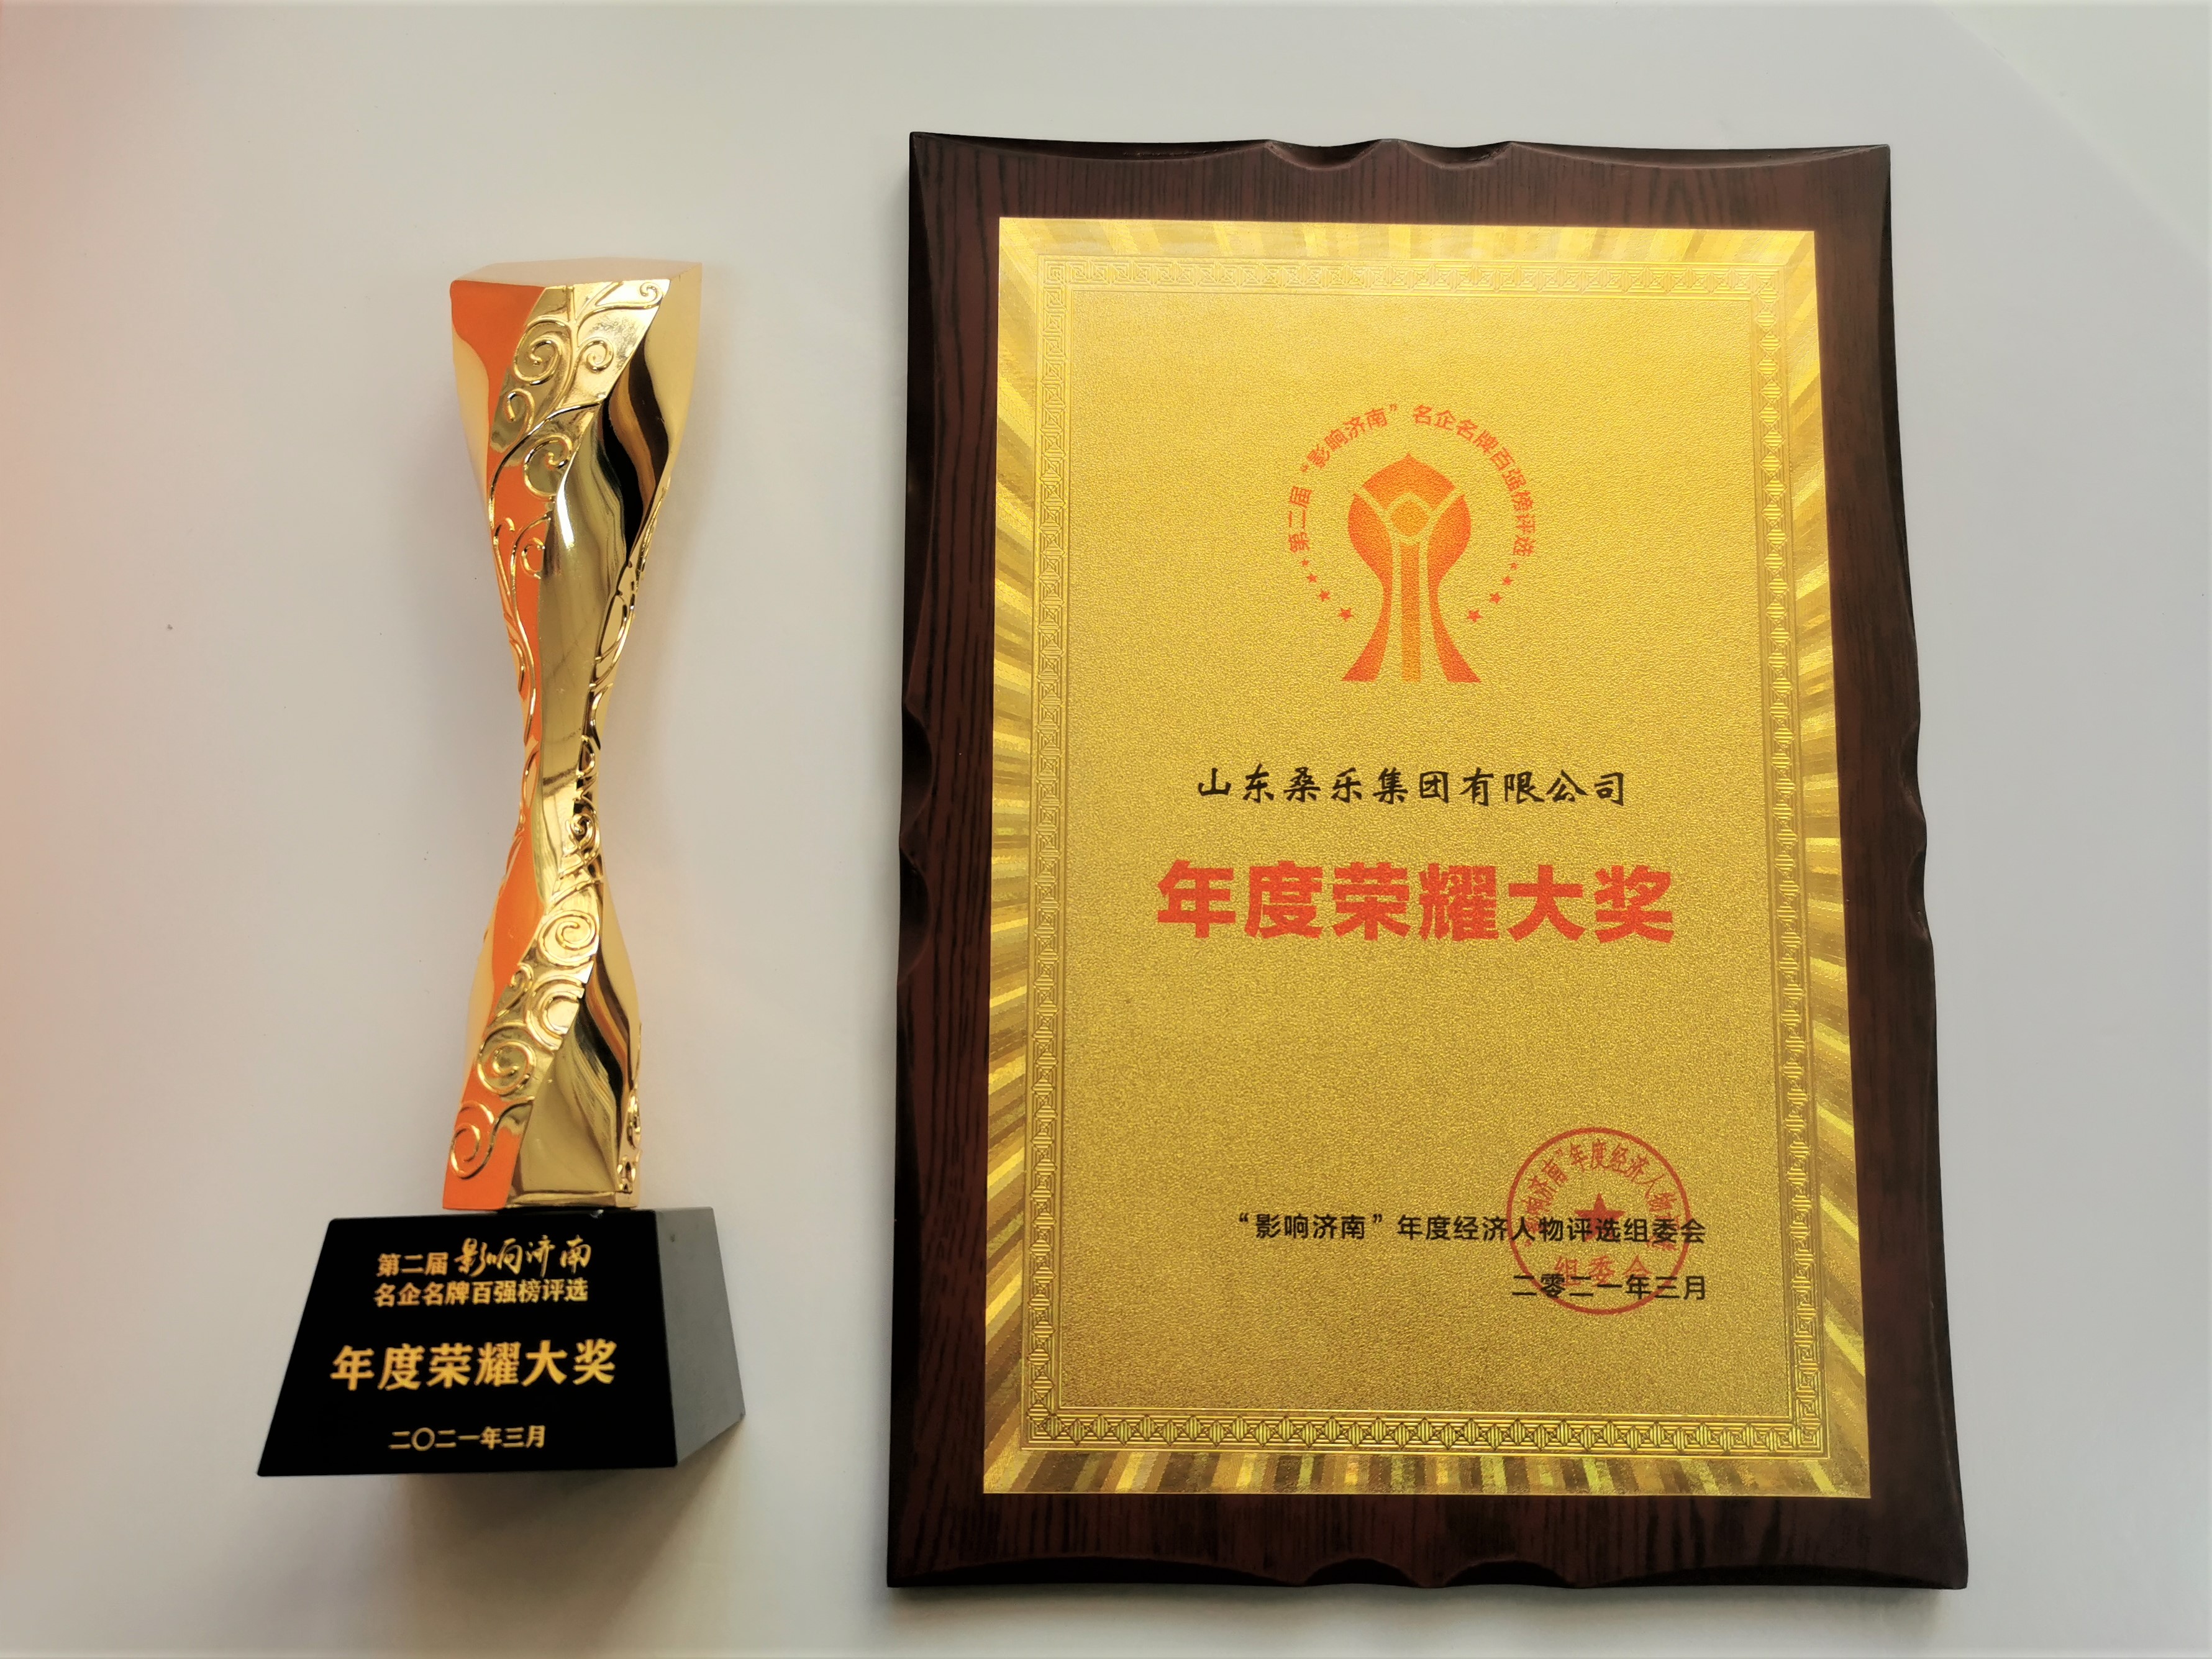 桑乐集团荣获第二届“影响济南”名企名牌百强榜“年度荣耀大奖”